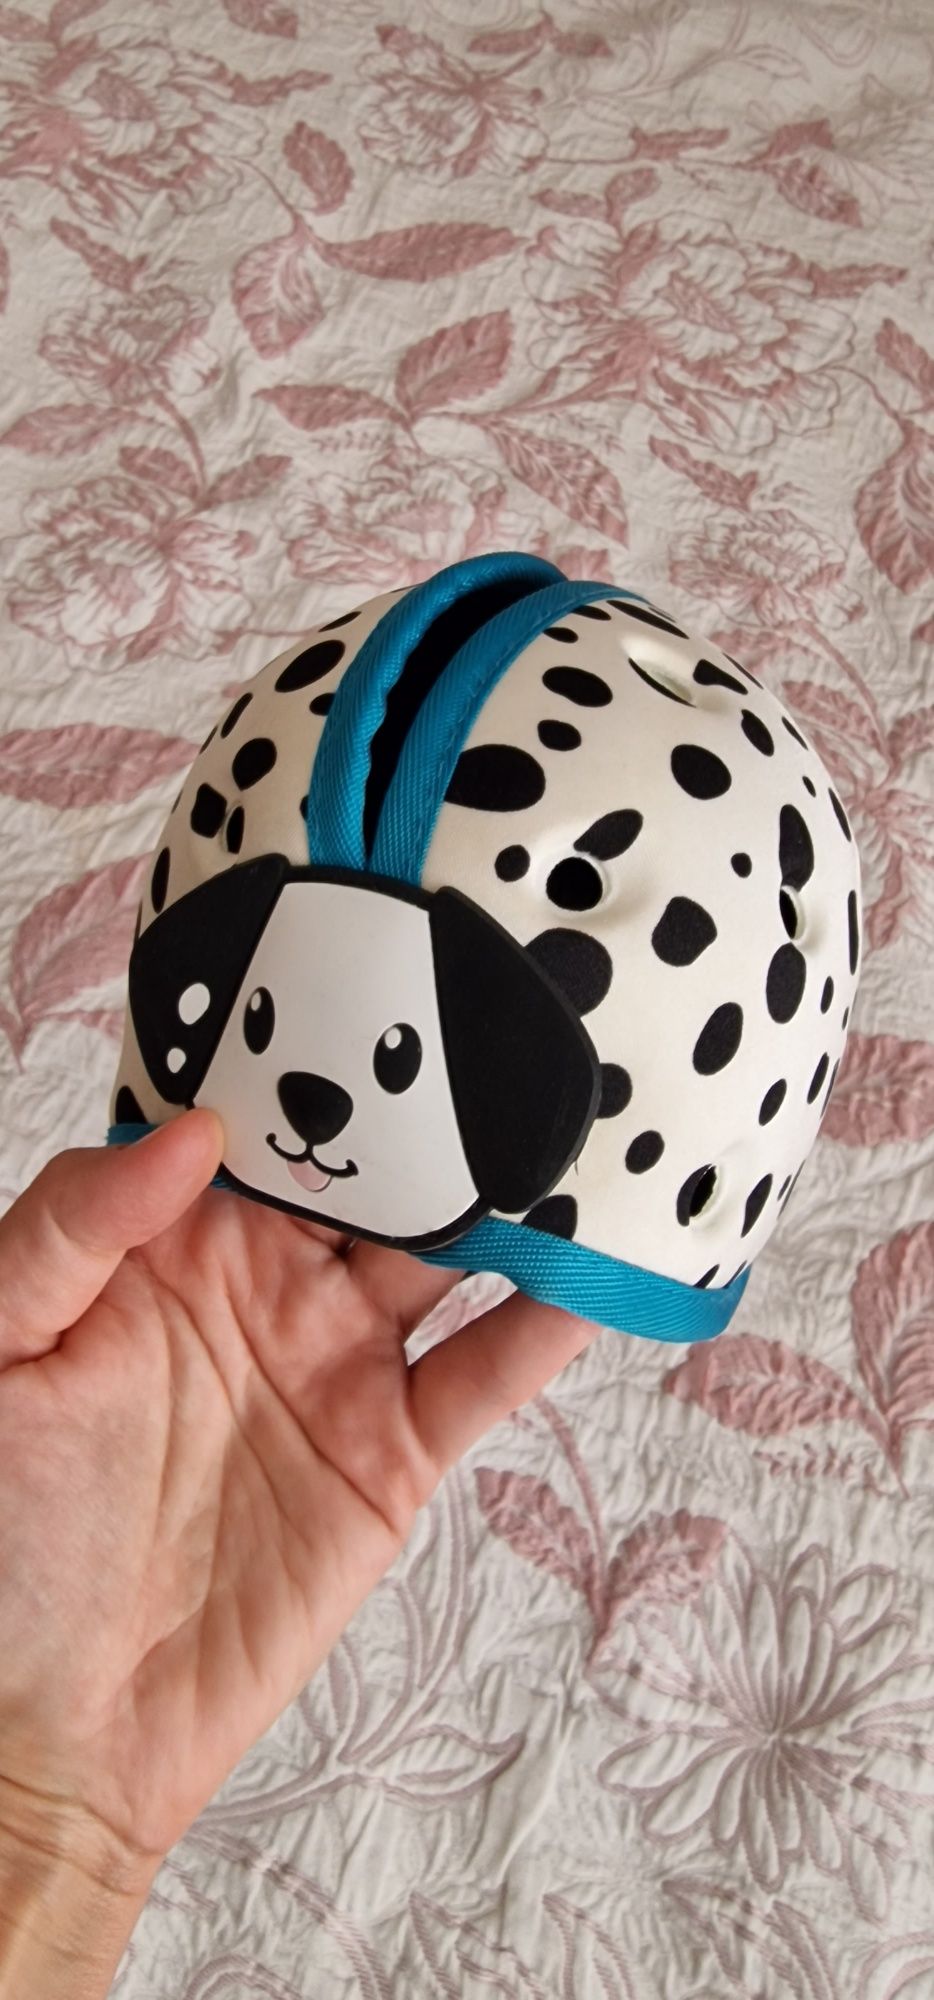 Защитный (противоударный) шлем для малышей